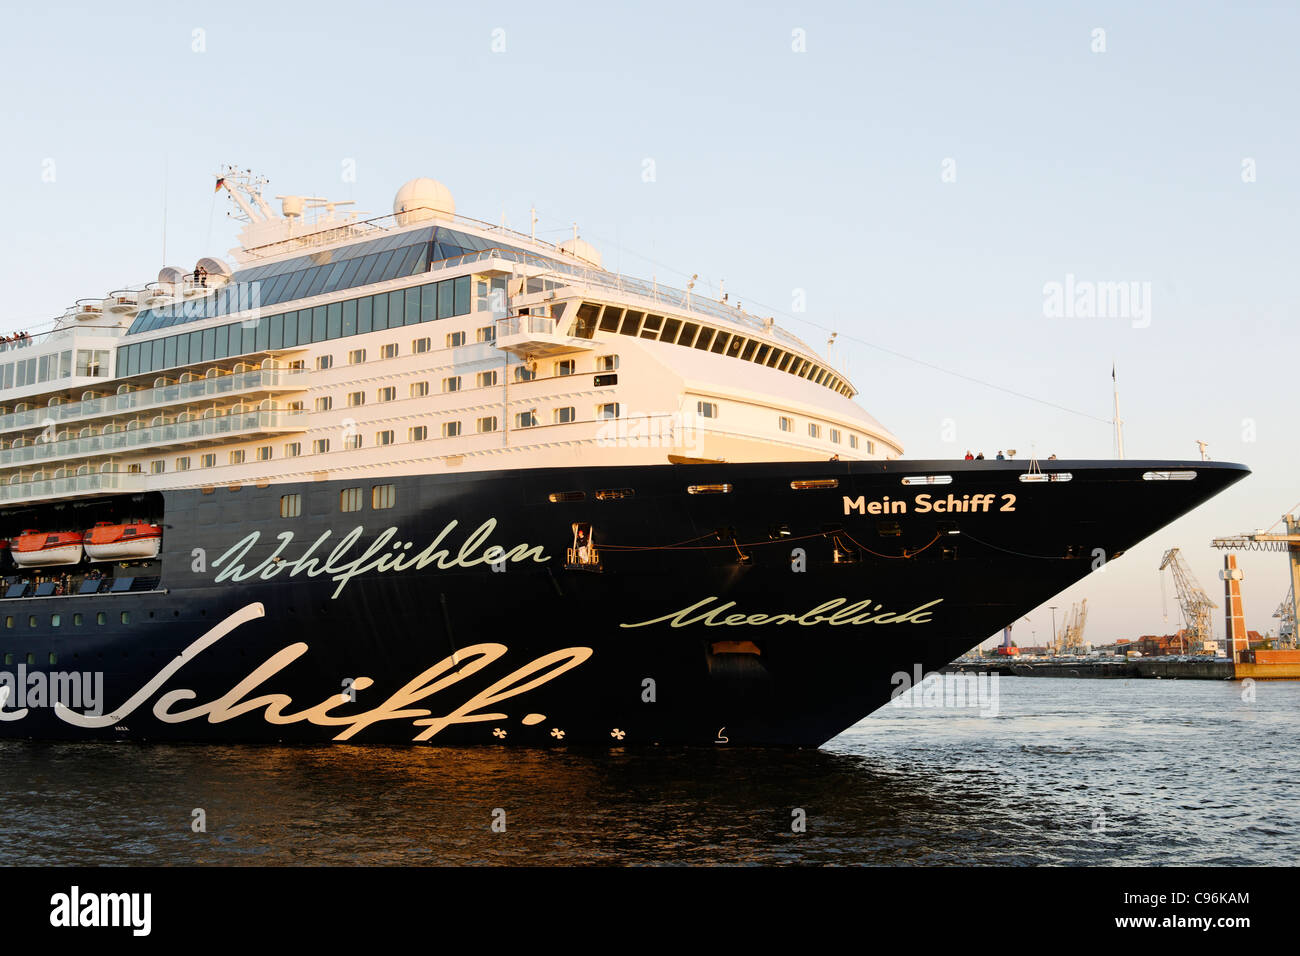 Cruise ship, Mein Schiff 2, in the port of Hamburg, Hamburg, Germany, Europe Stock Photo